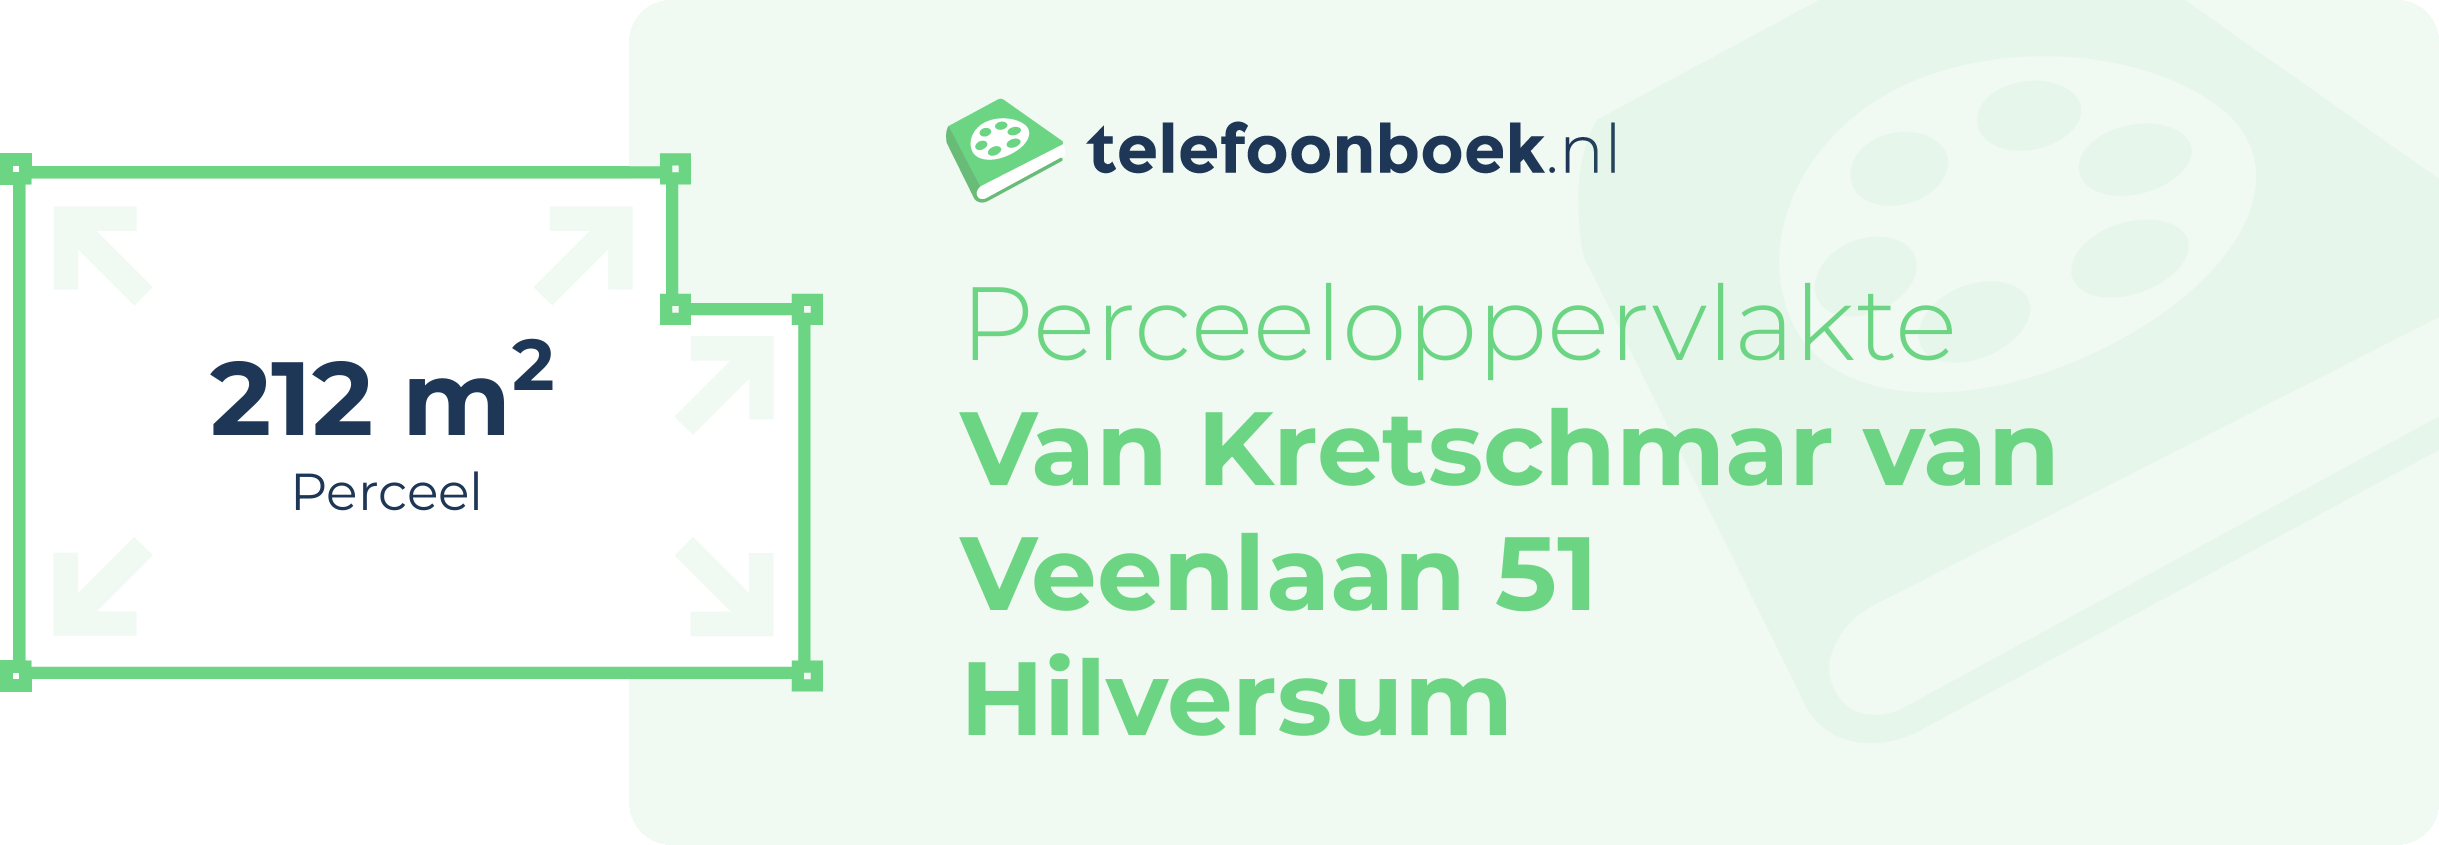 Perceeloppervlakte Van Kretschmar Van Veenlaan 51 Hilversum